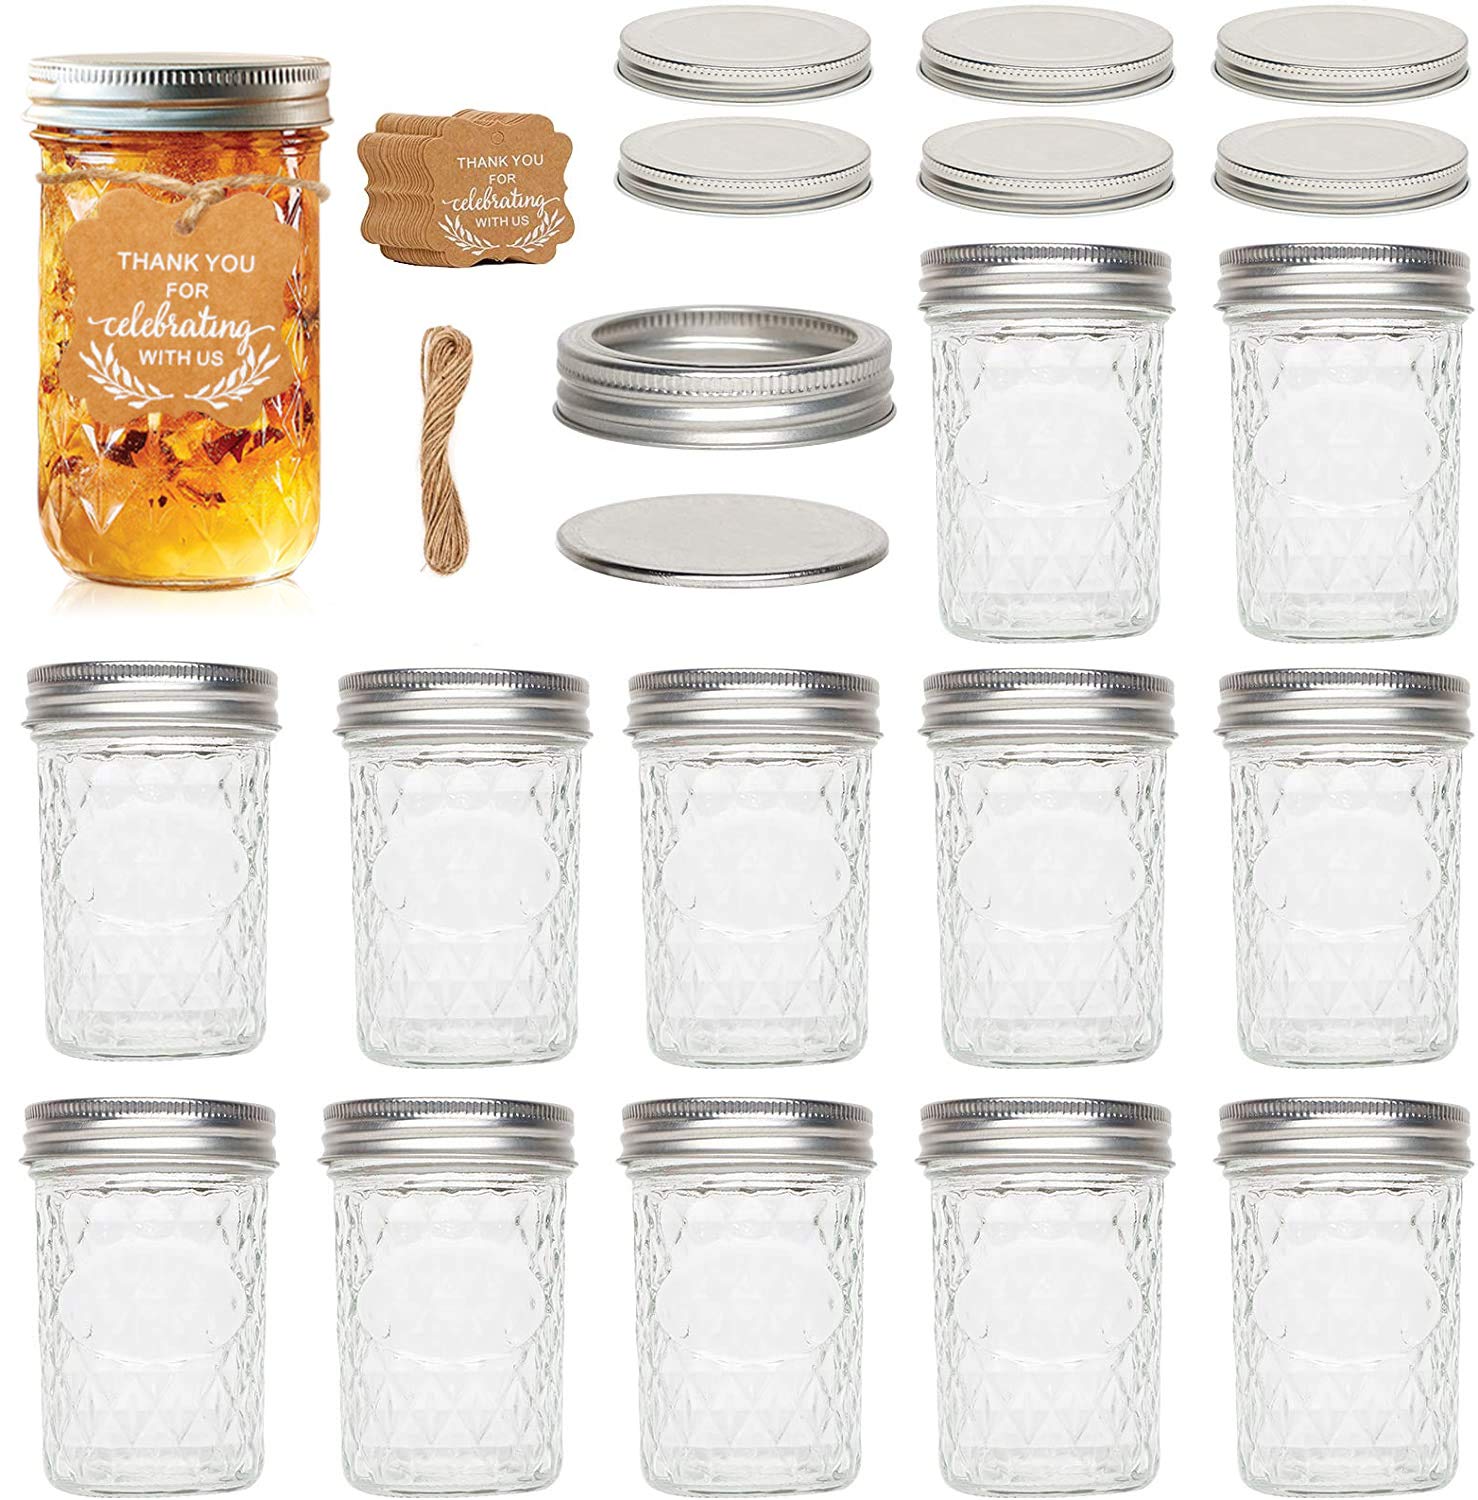 UHAPEER 12 Pack Einmachgläser mit Deckel, Vorratsdosen Vorratsgläser Glas 250ML, Mason Jars Glasbehälter, Vorratsglas Einkochgläser für Marmelade, Honig, Hochzeitsgeschenke, Babynahrung